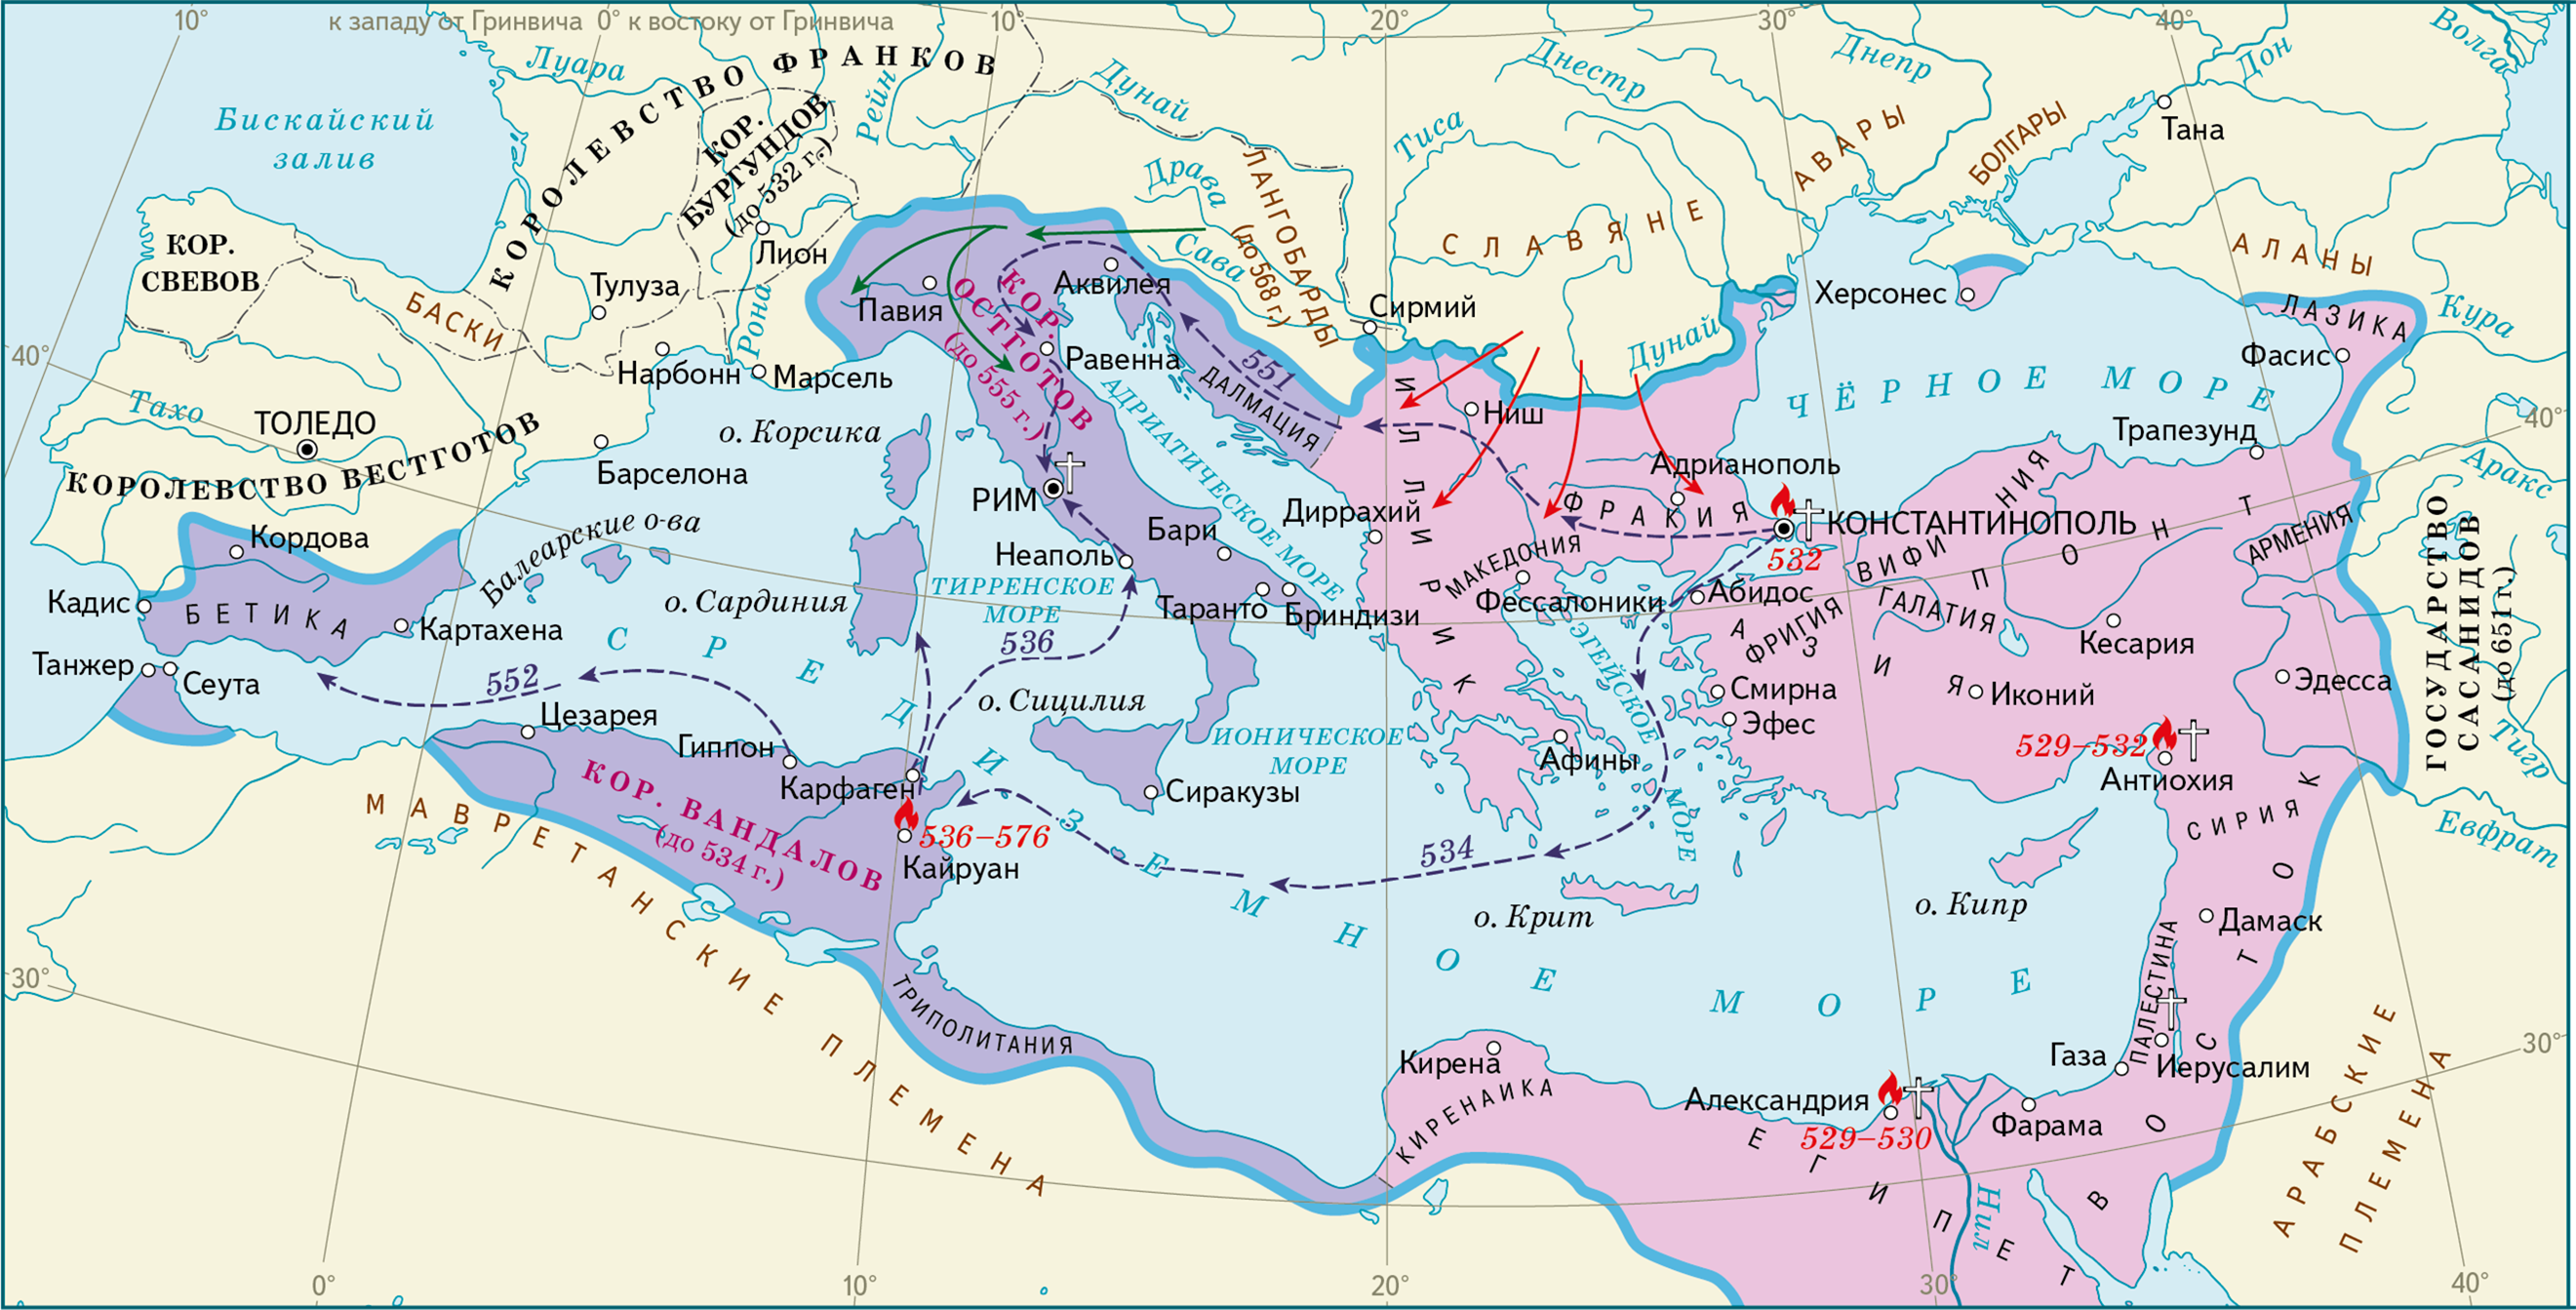 Где сейчас город константинополь. Византийская Империя Юстиниан карта. Византийская Империя карта 11 века. Восточная Римская Империя при евстиниане. Карта Византийской империи в 6 веке.